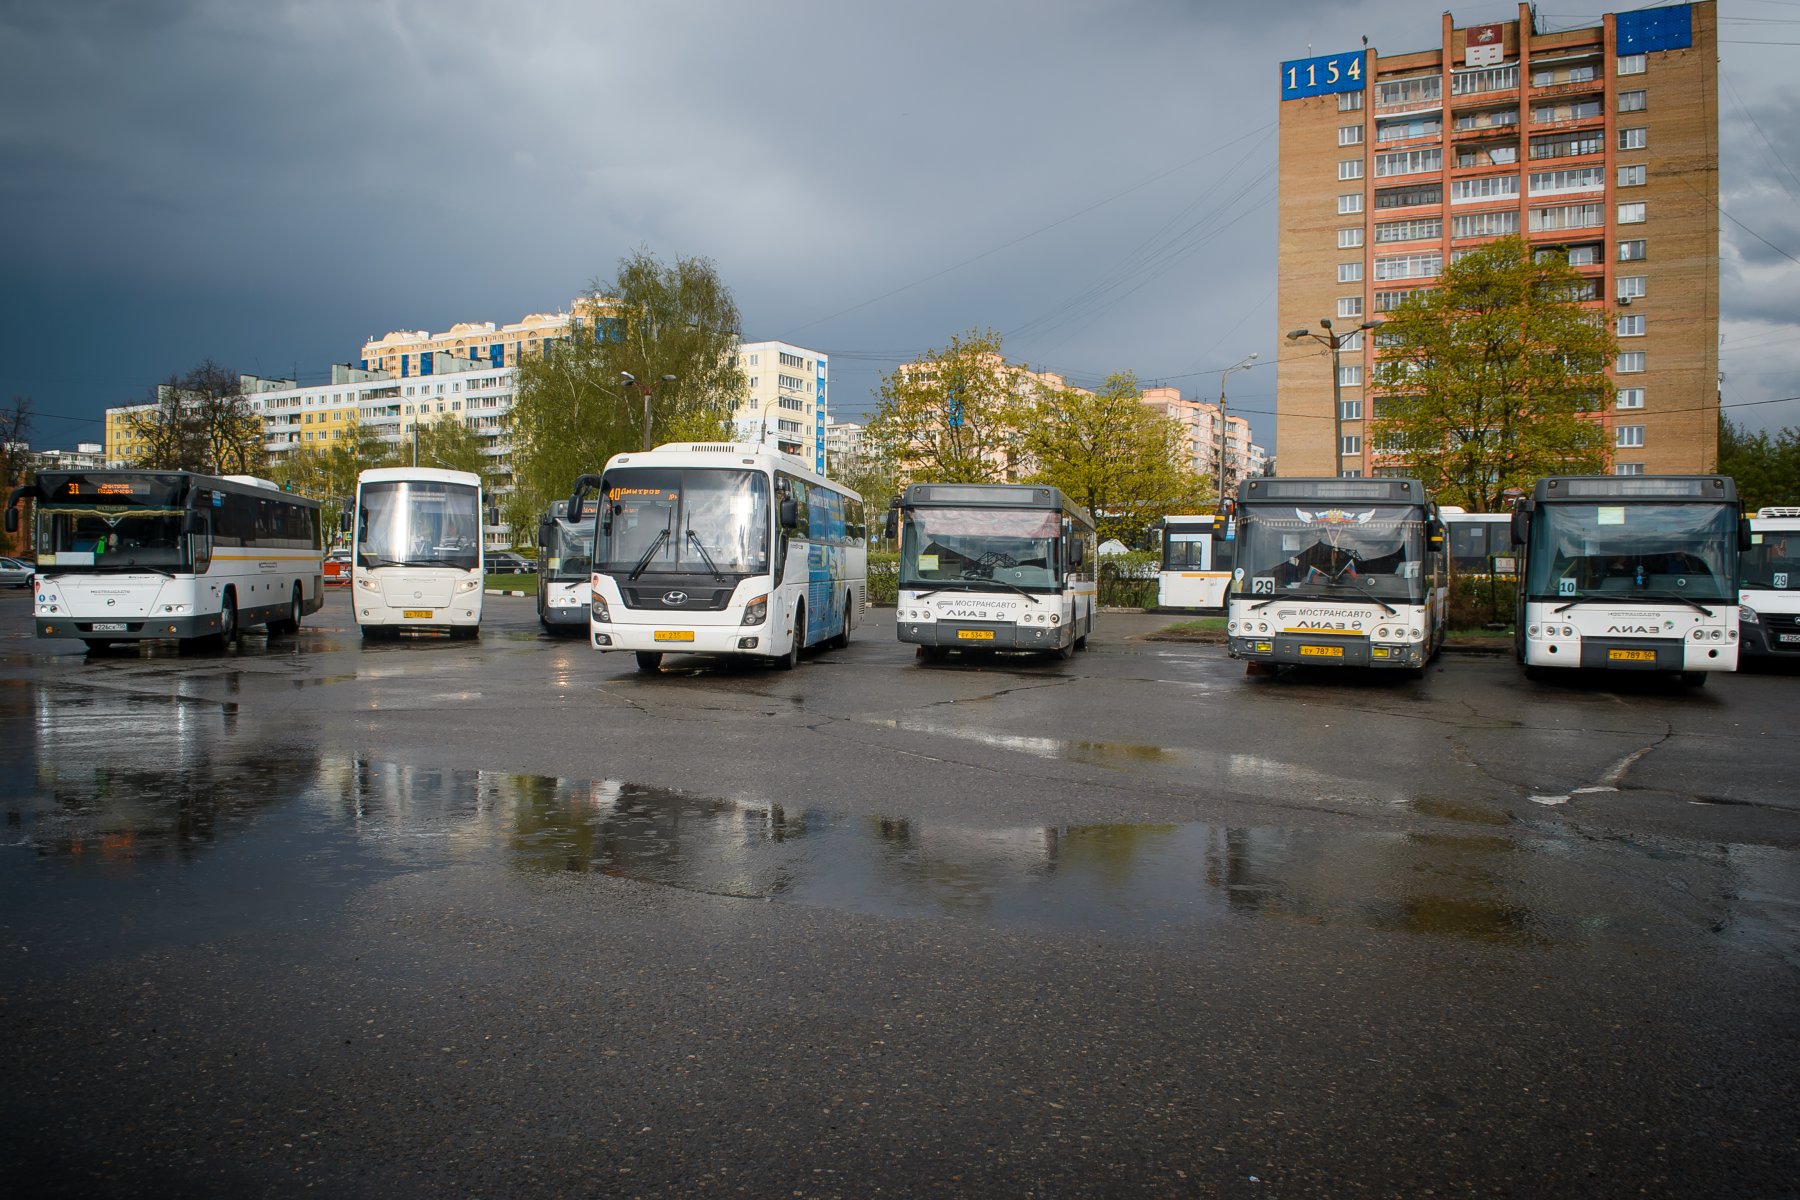 Автобусы и маршрутки Подмосковья подведут под единый стандарт